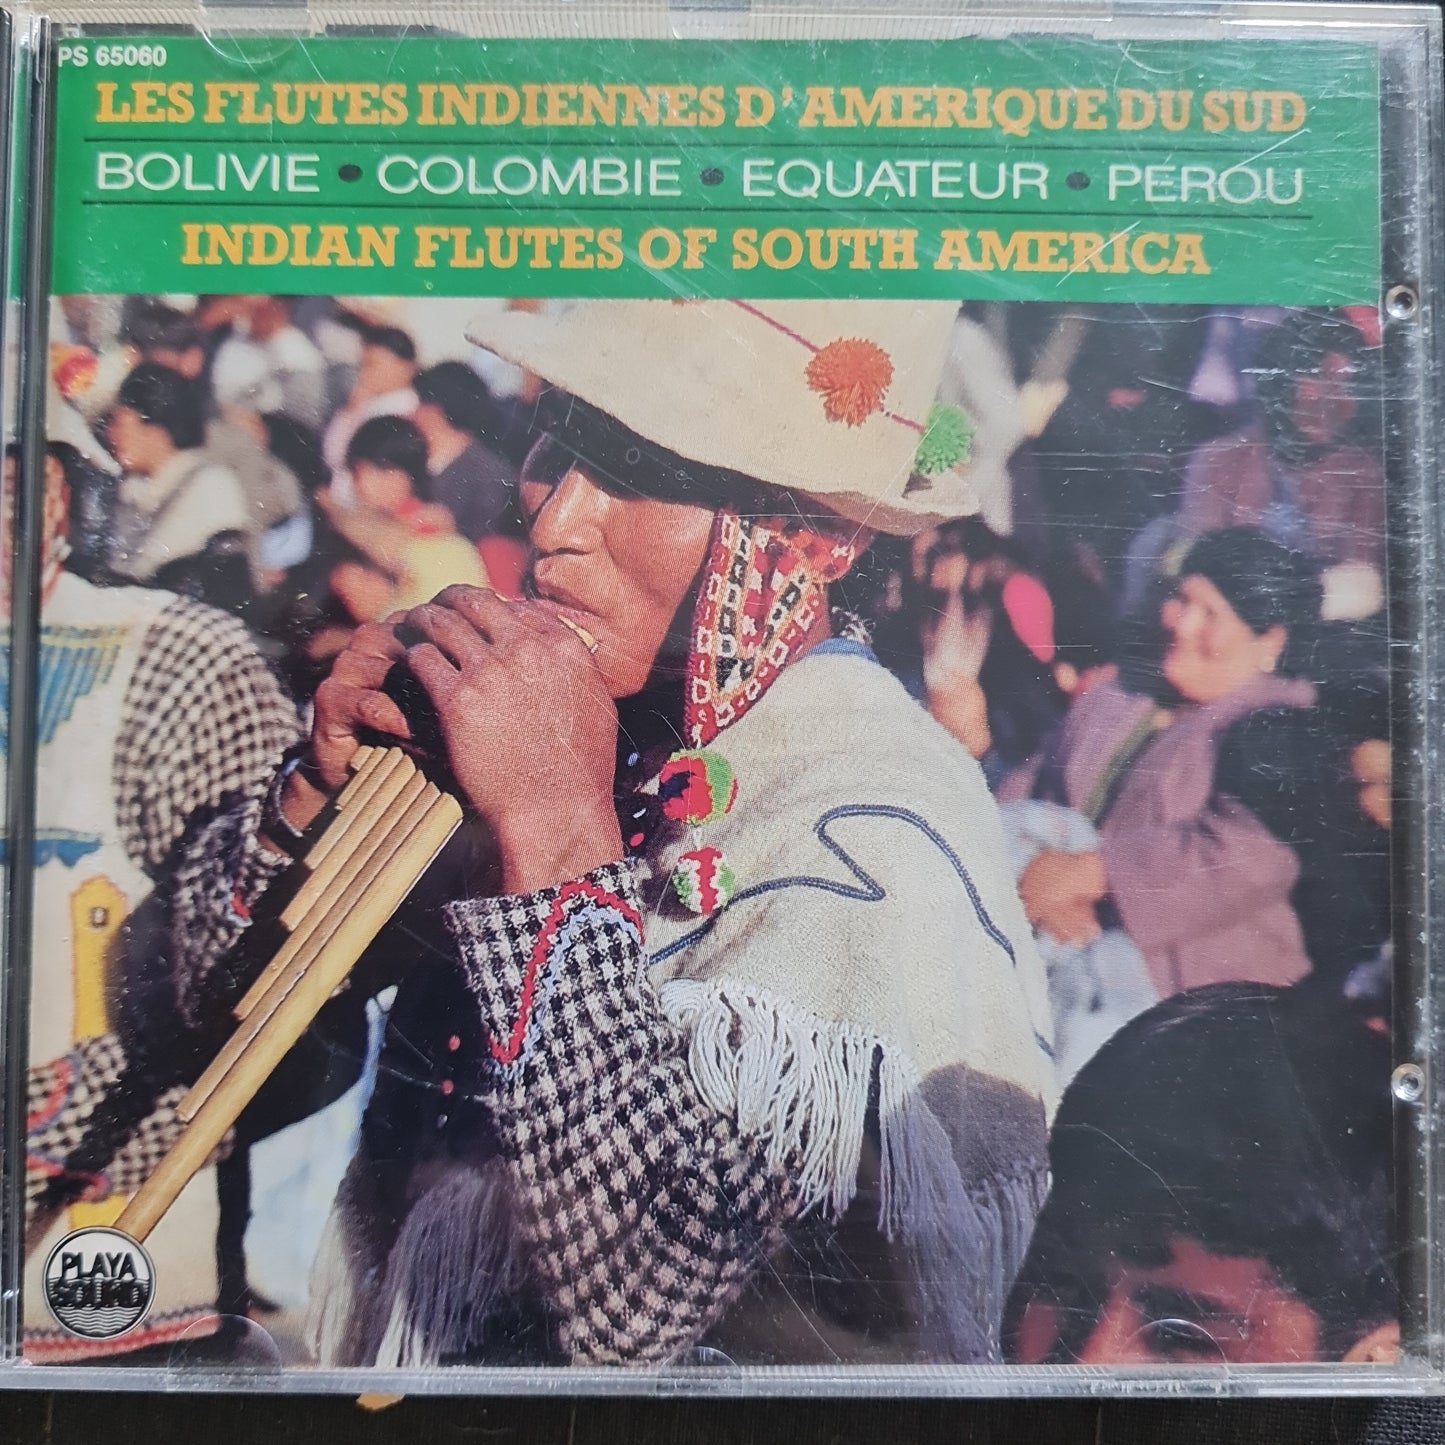 Les flûtes indiennes d'Amérique du sud Bolivie - Colombie - Équateur - Pérou 3298490650608 cd occasion